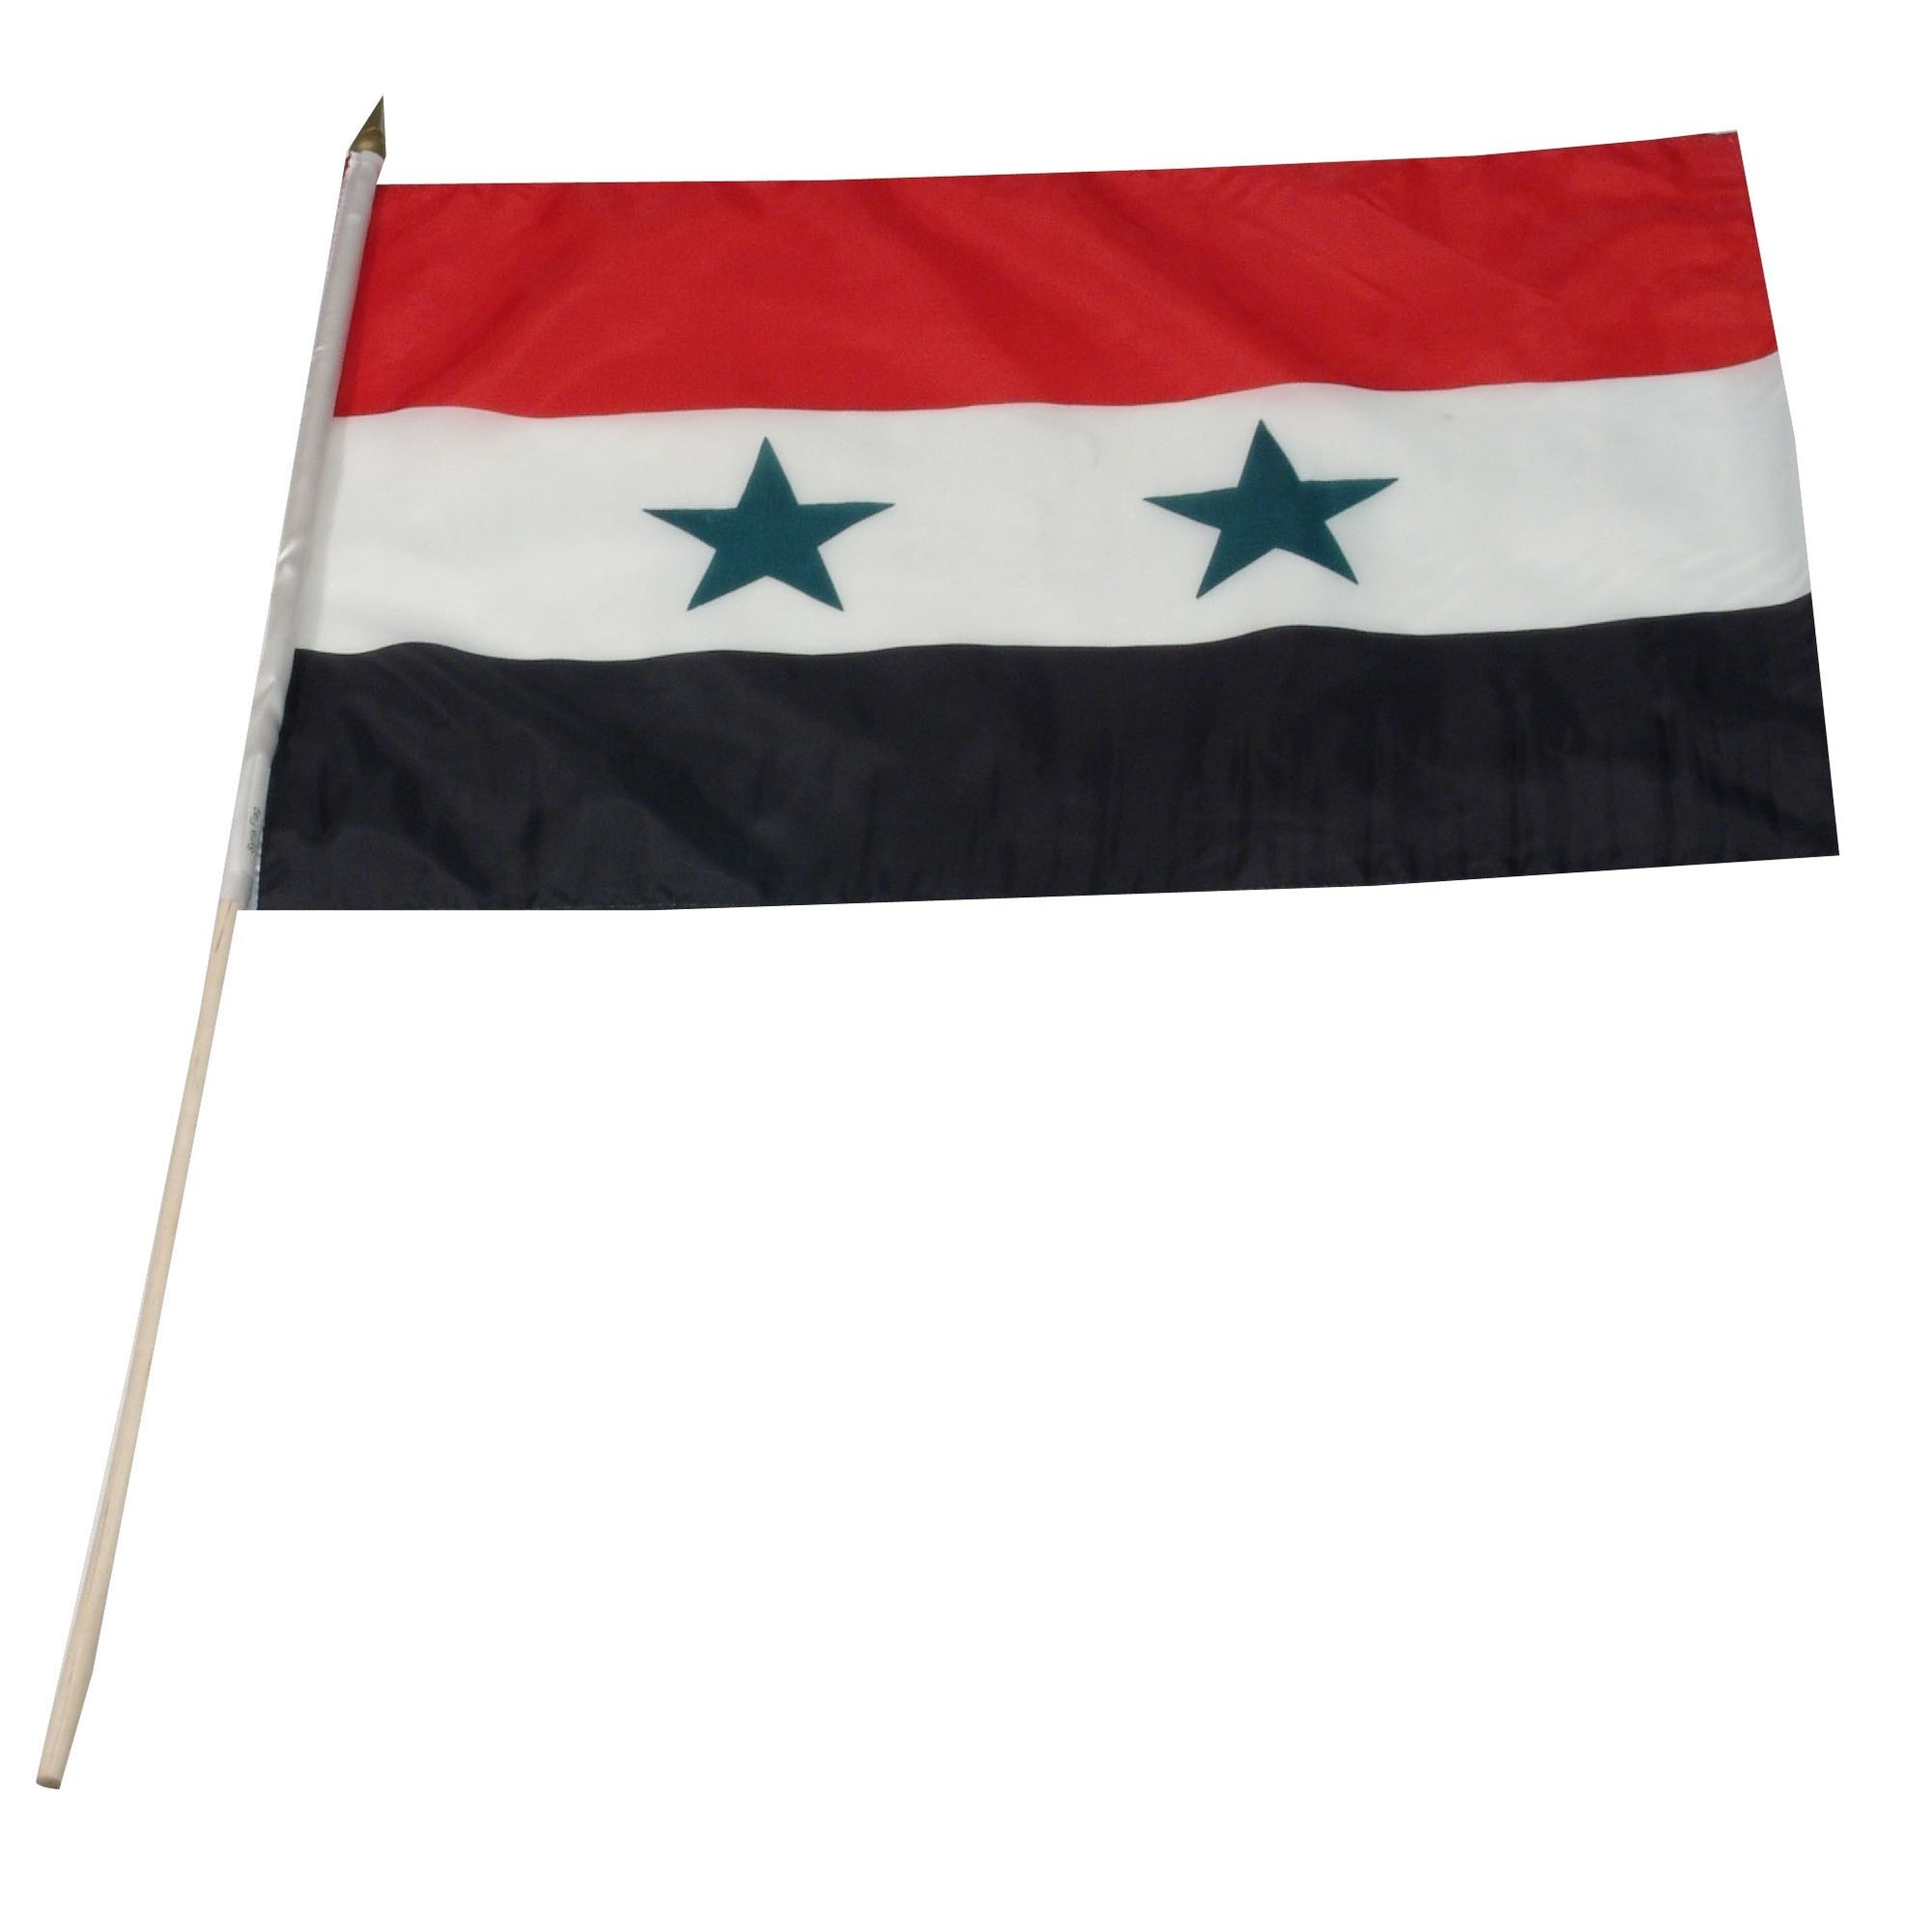 Syria 12" x 18" Mounted Flag